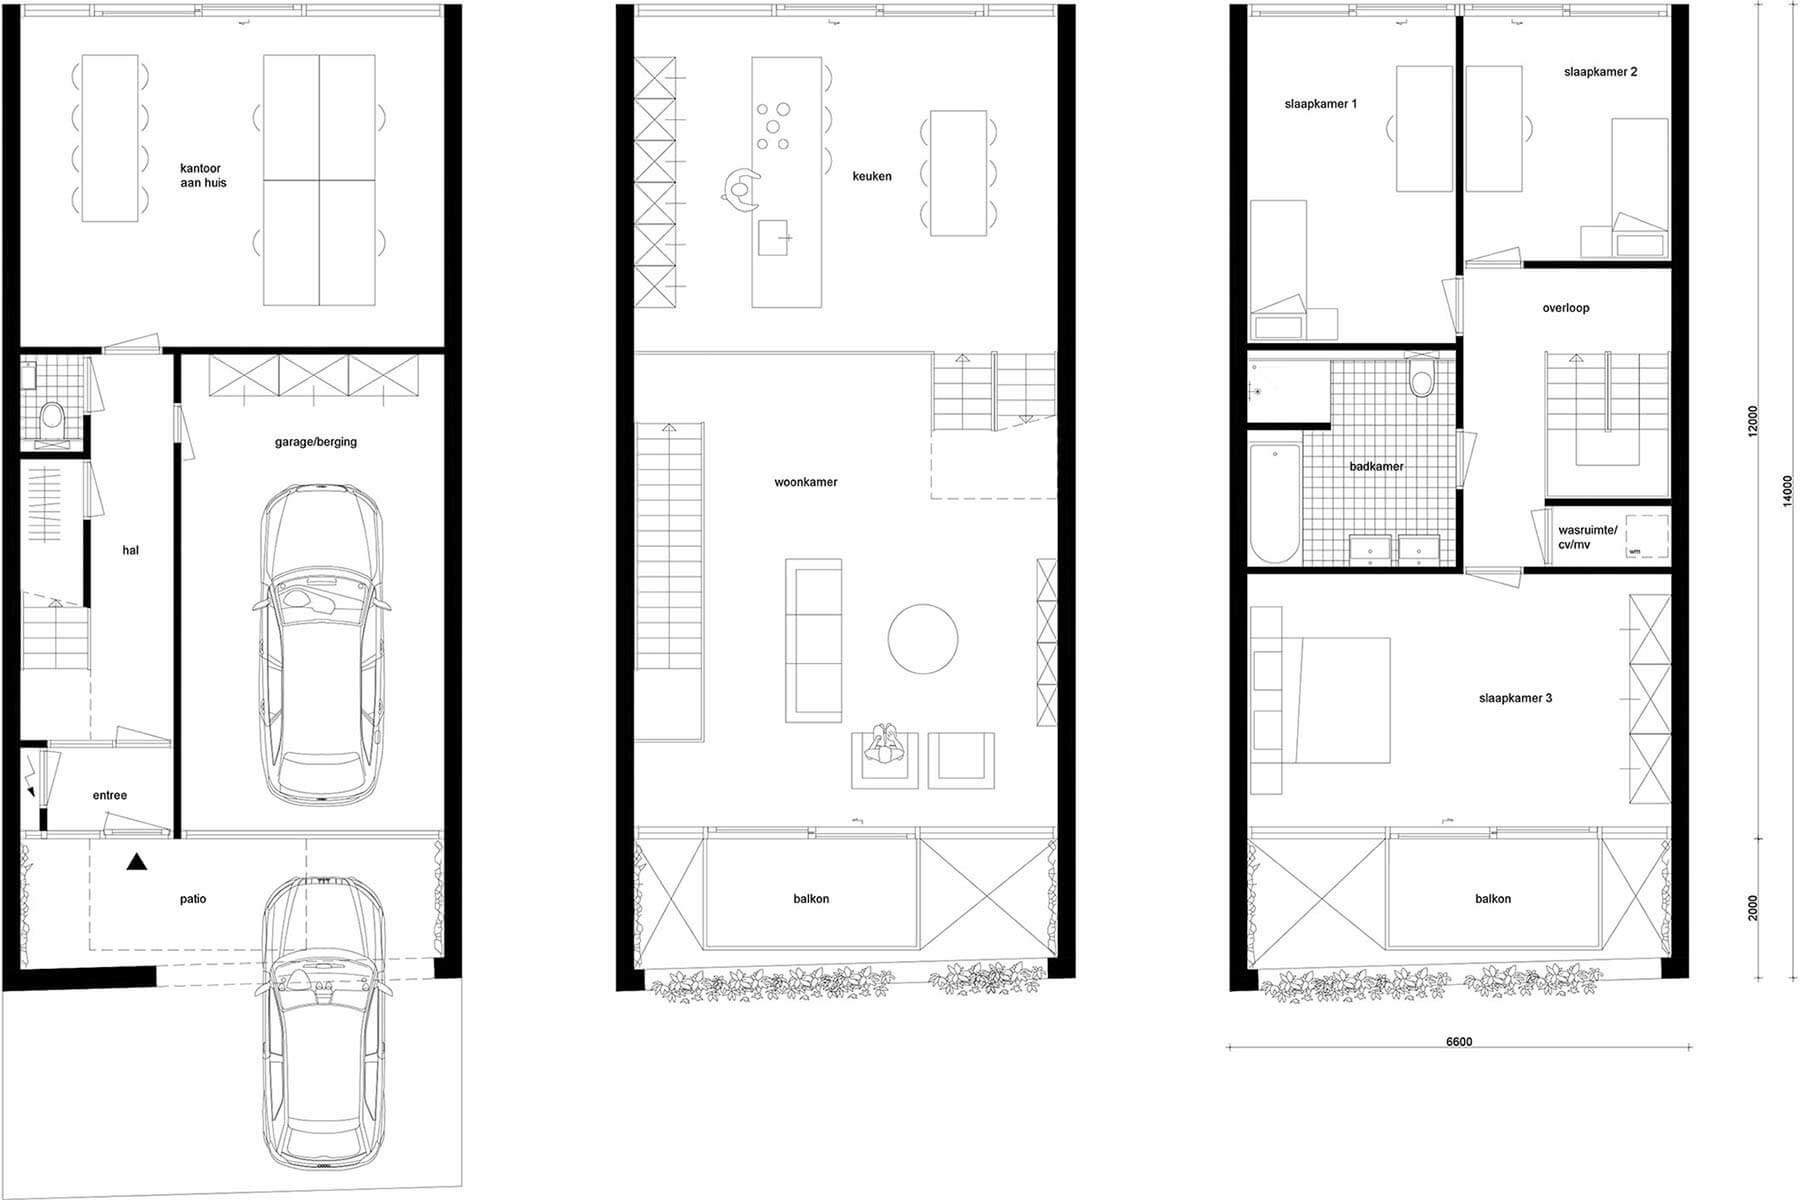 8A Architecten - zelfbouw woning met split level, IJburg Blok 59, Amsterdam